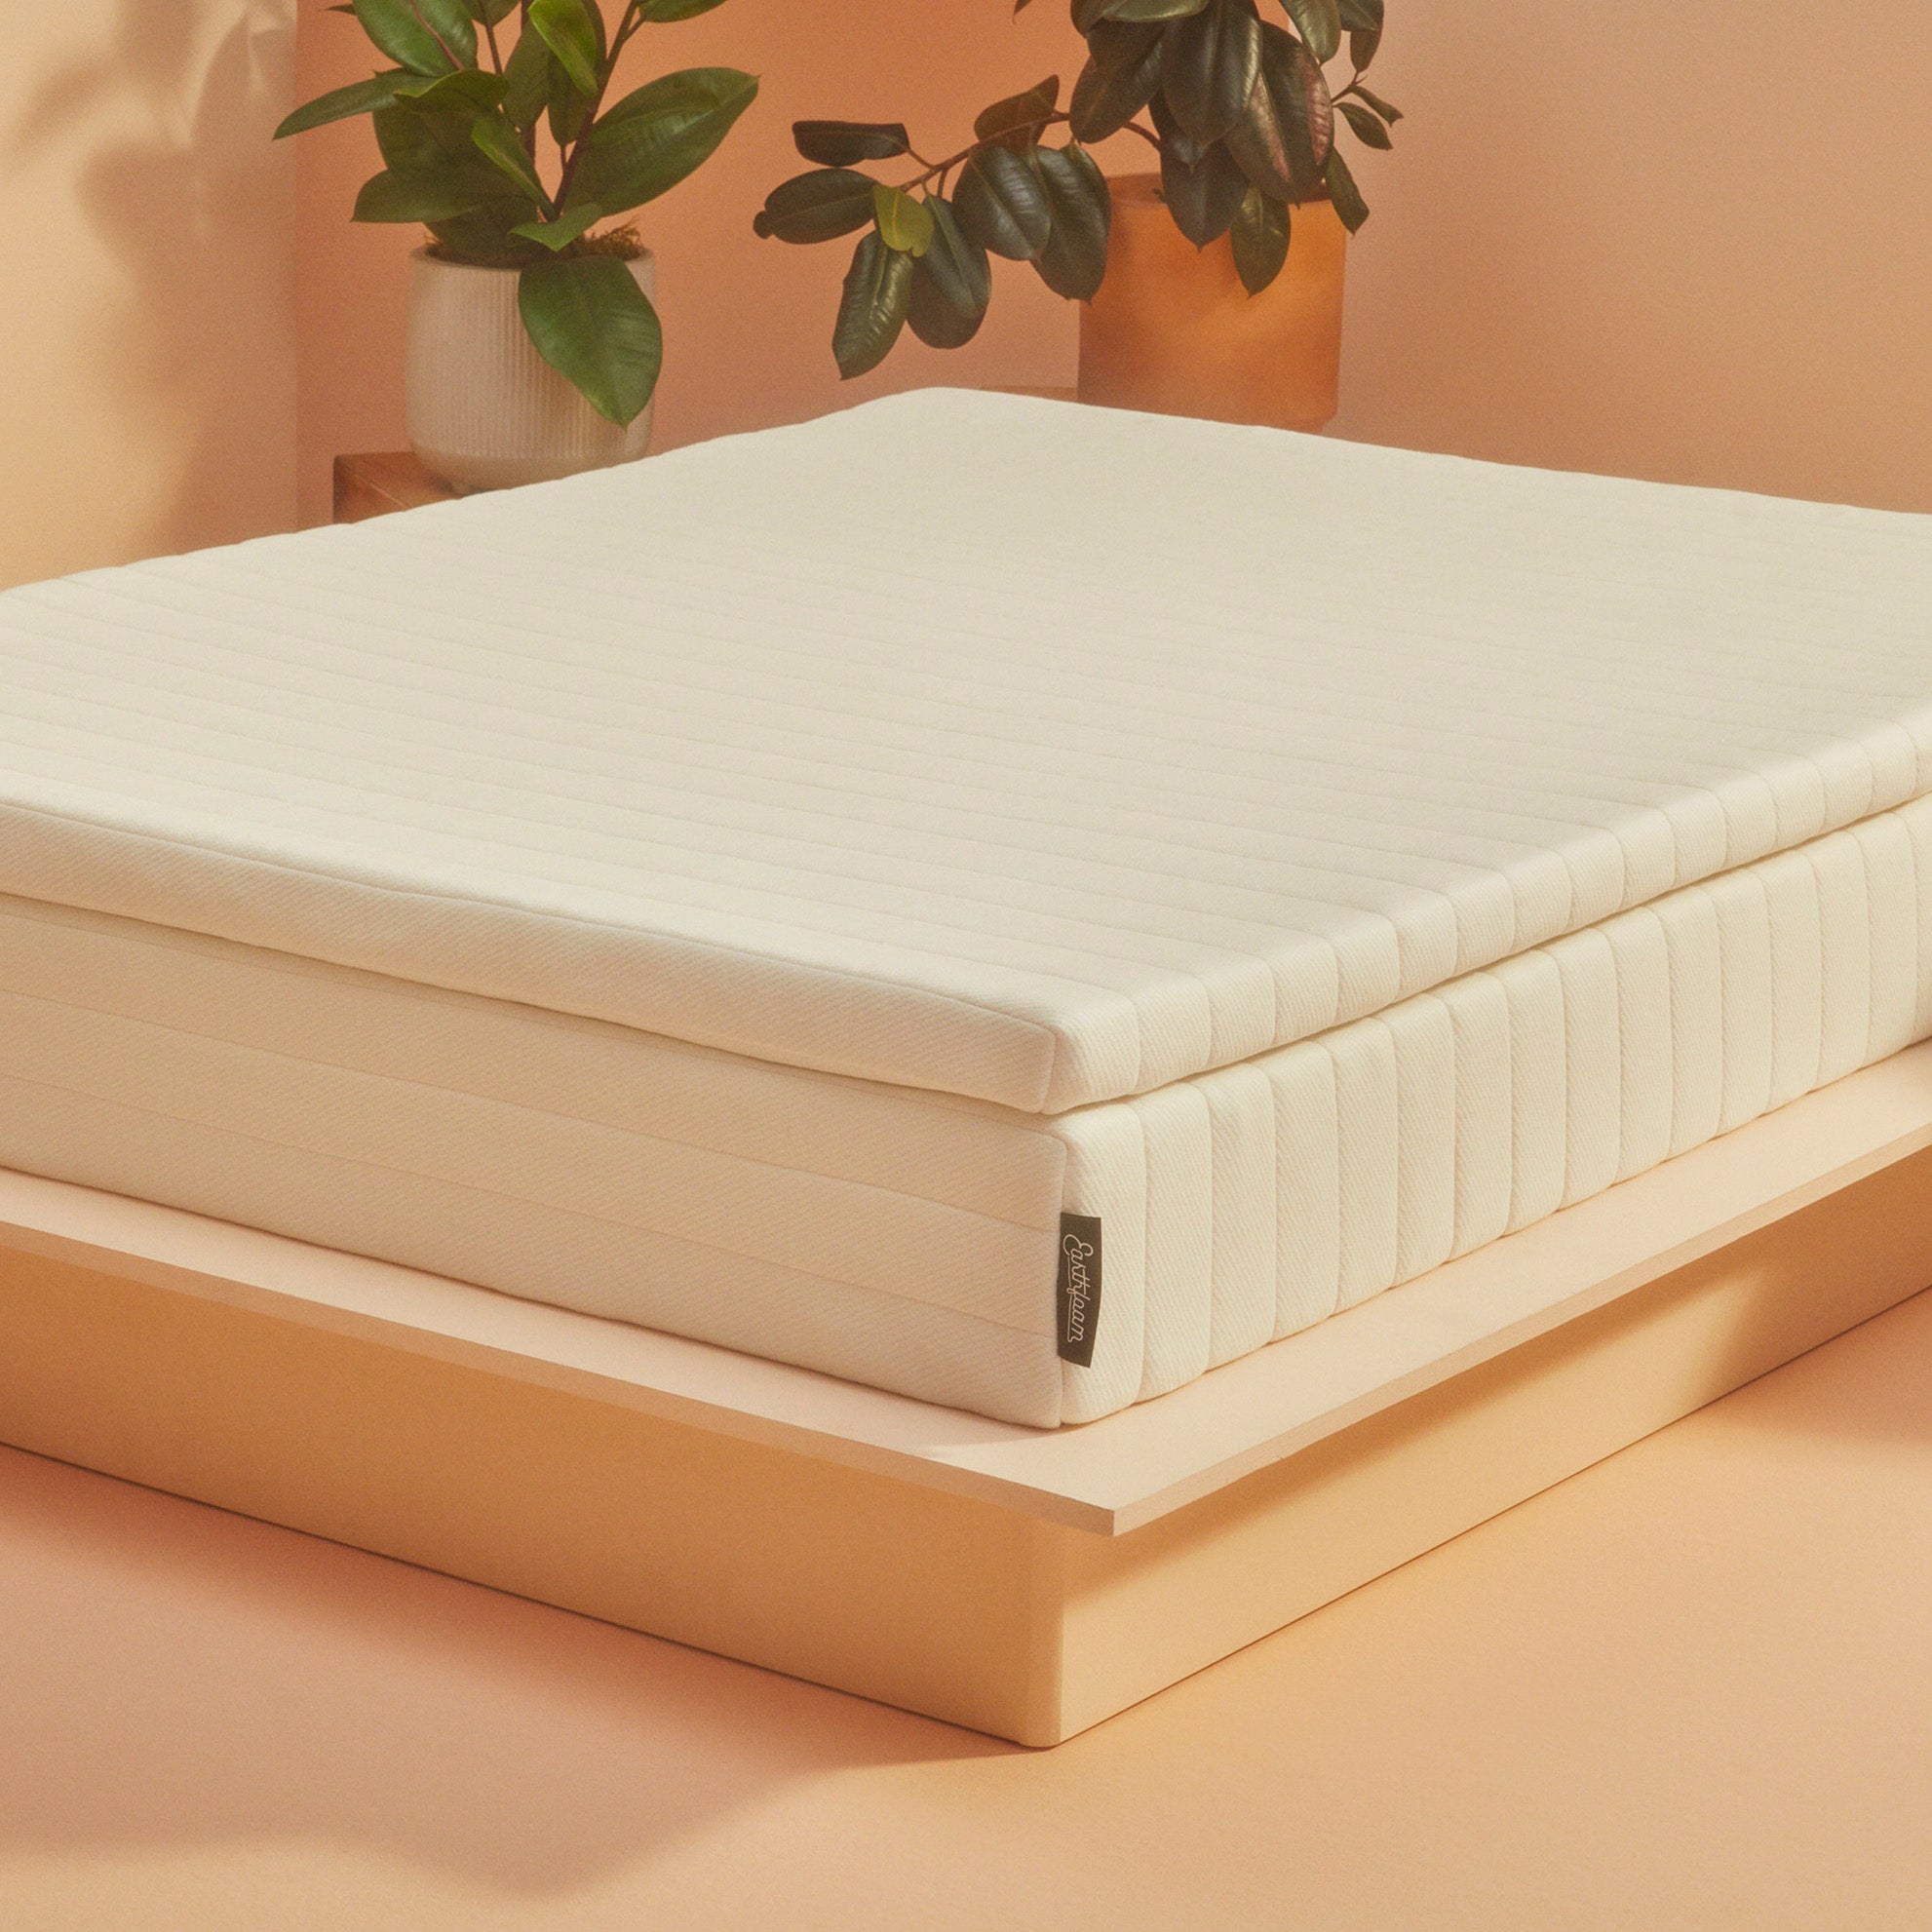 Earthfoam mattress topper on bed